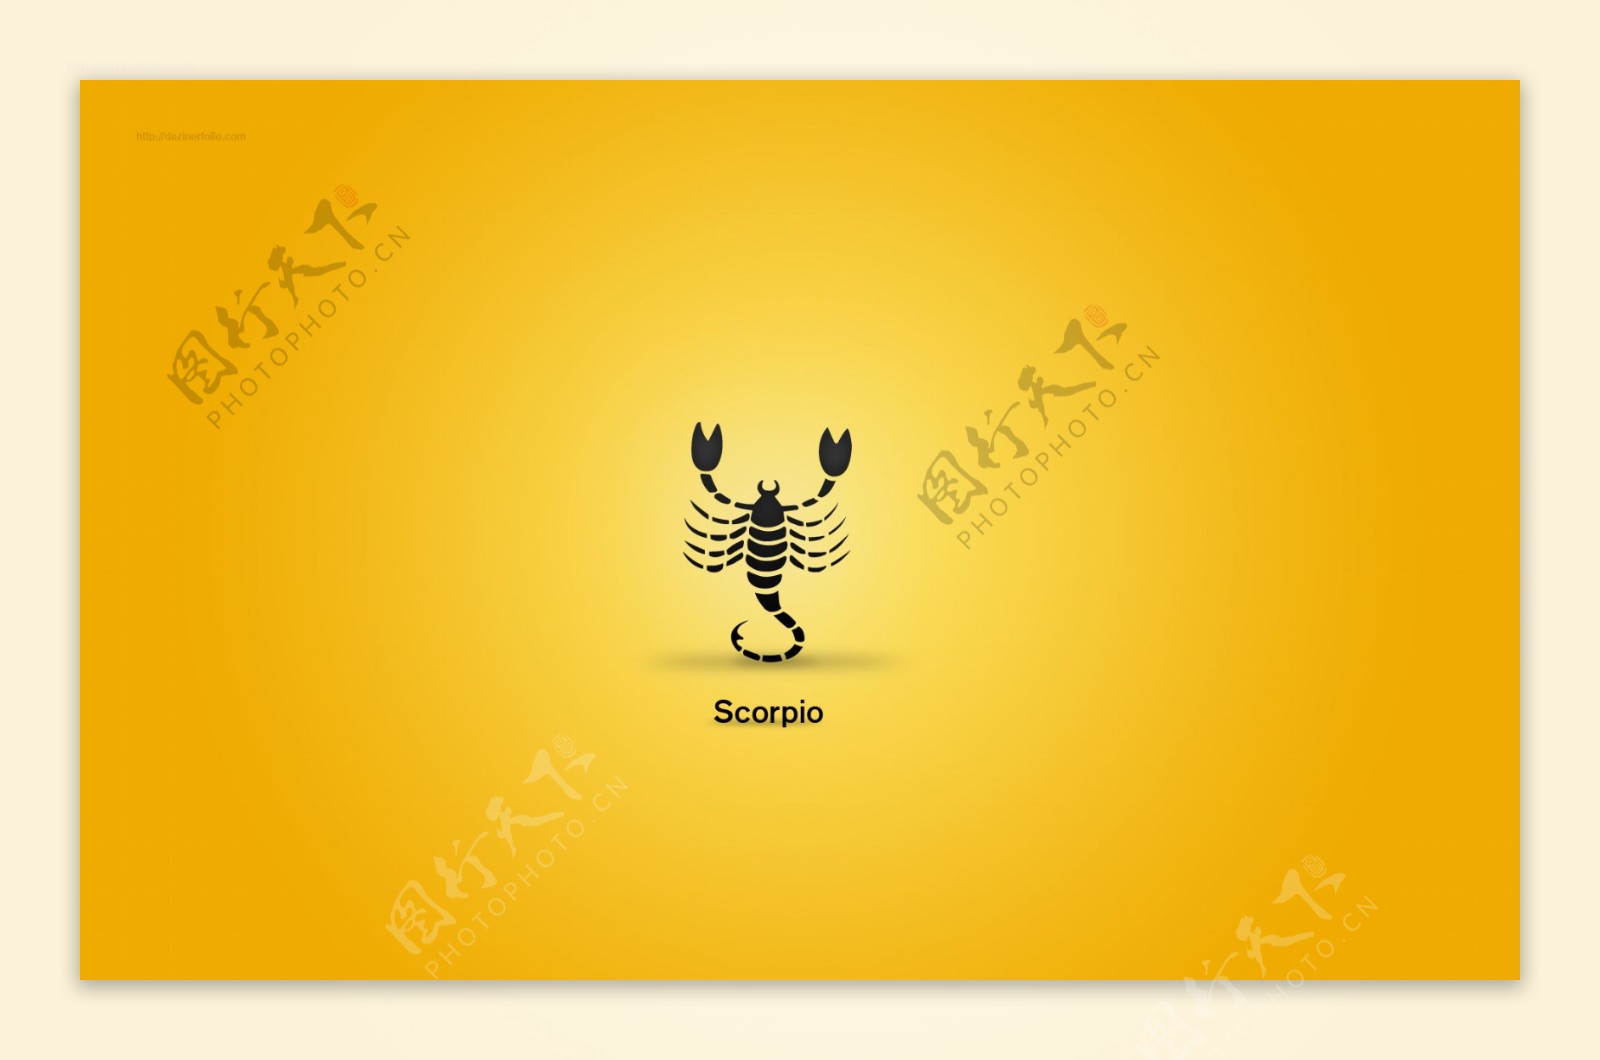 12星座黄色背景壁纸素材scorpio图片